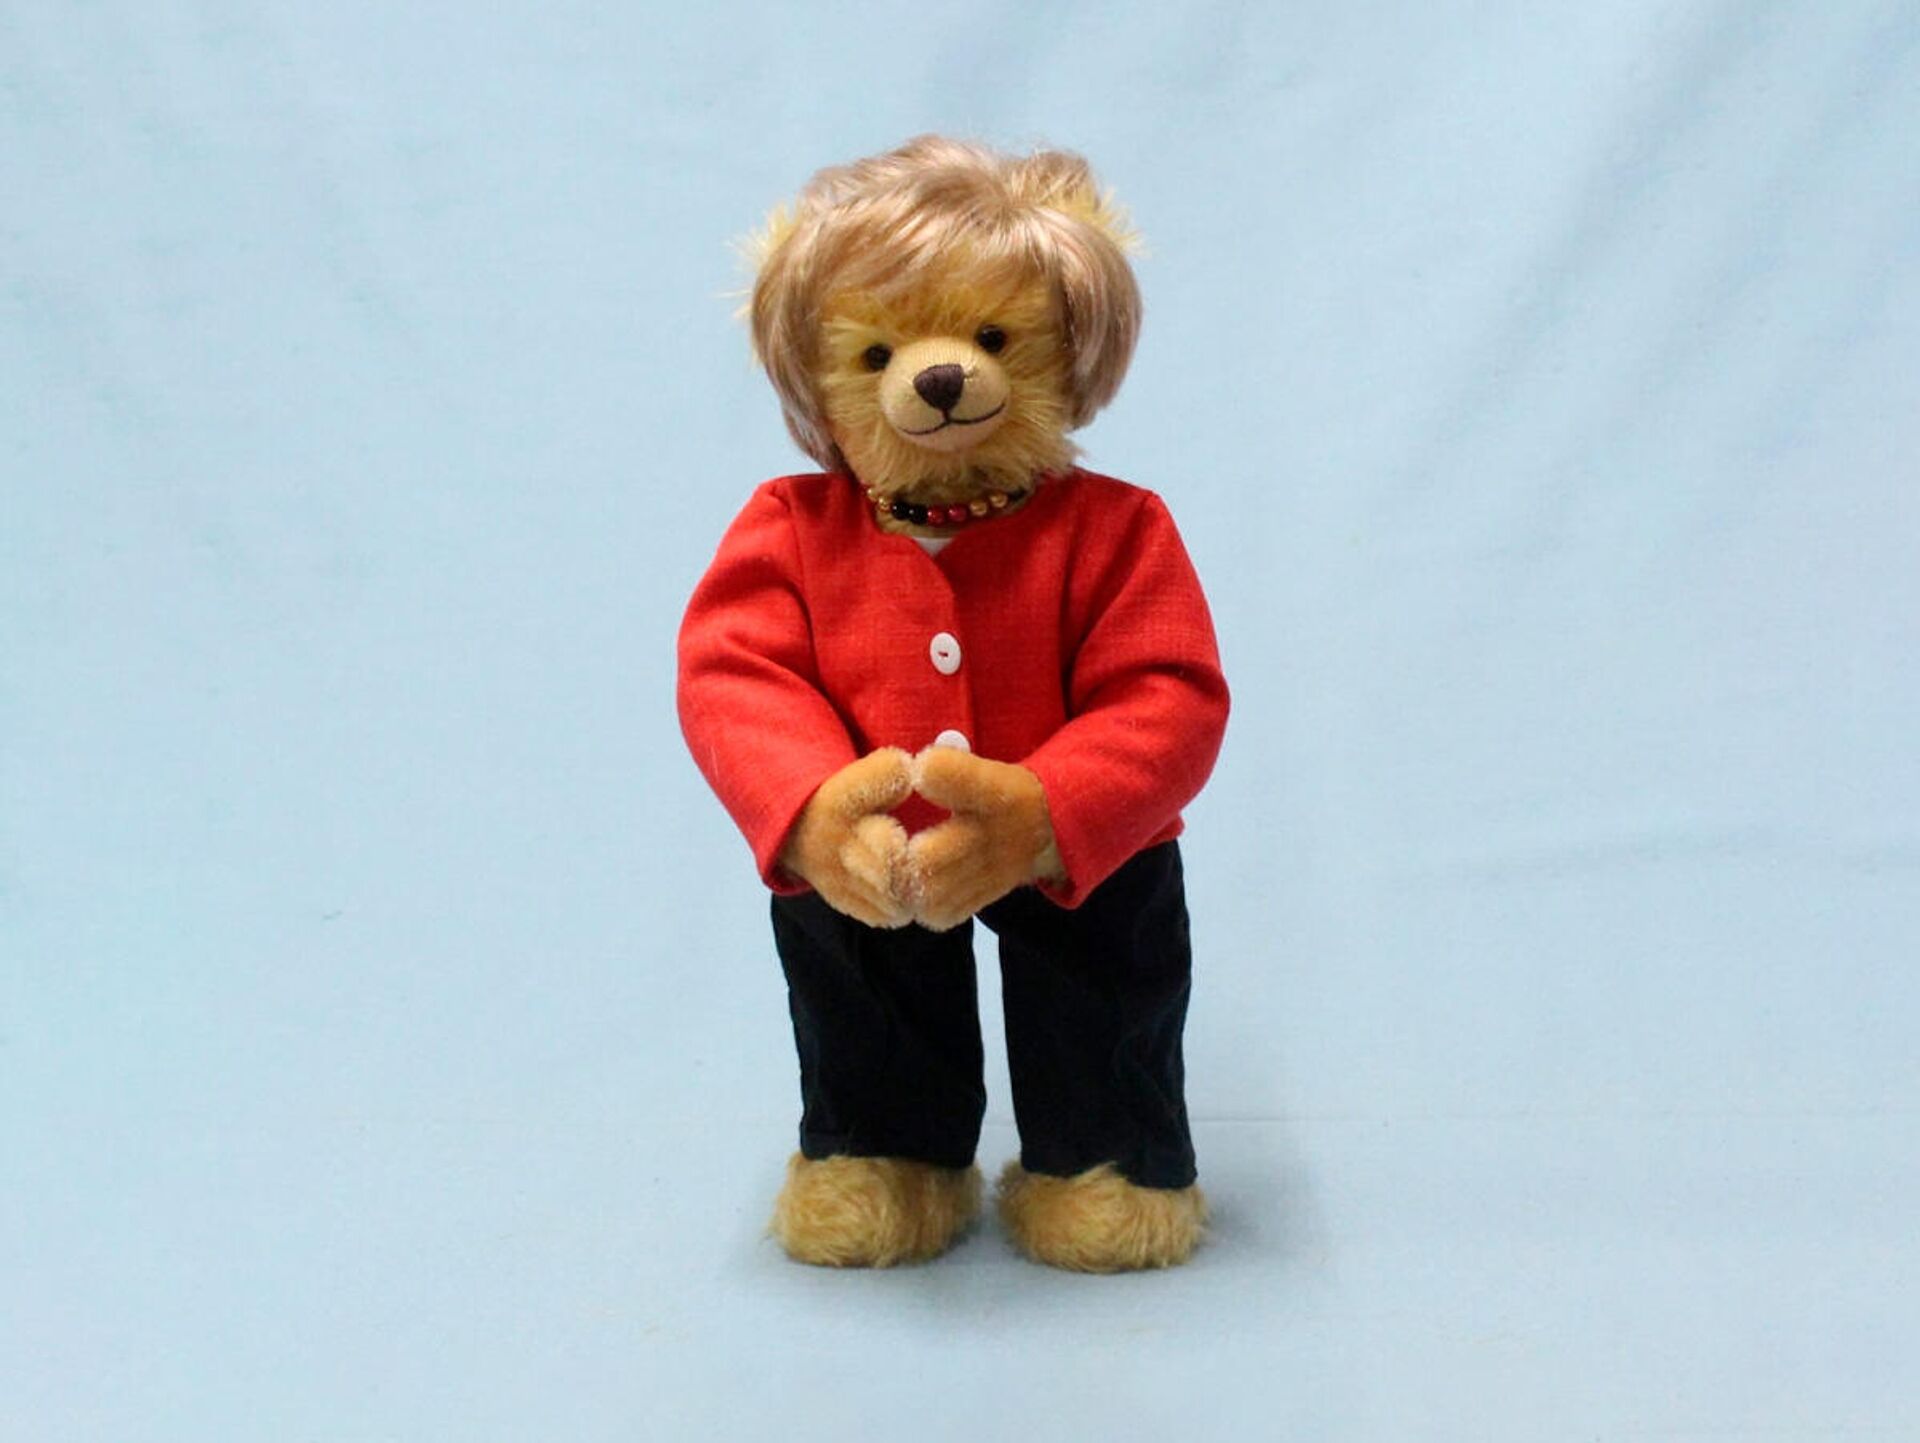 Немецкая фабрика по производству плюшевых игрушек выпустила медвежонка в образе канцлера Германии Ангелы Меркель - Sputnik Латвия, 1920, 21.09.2021